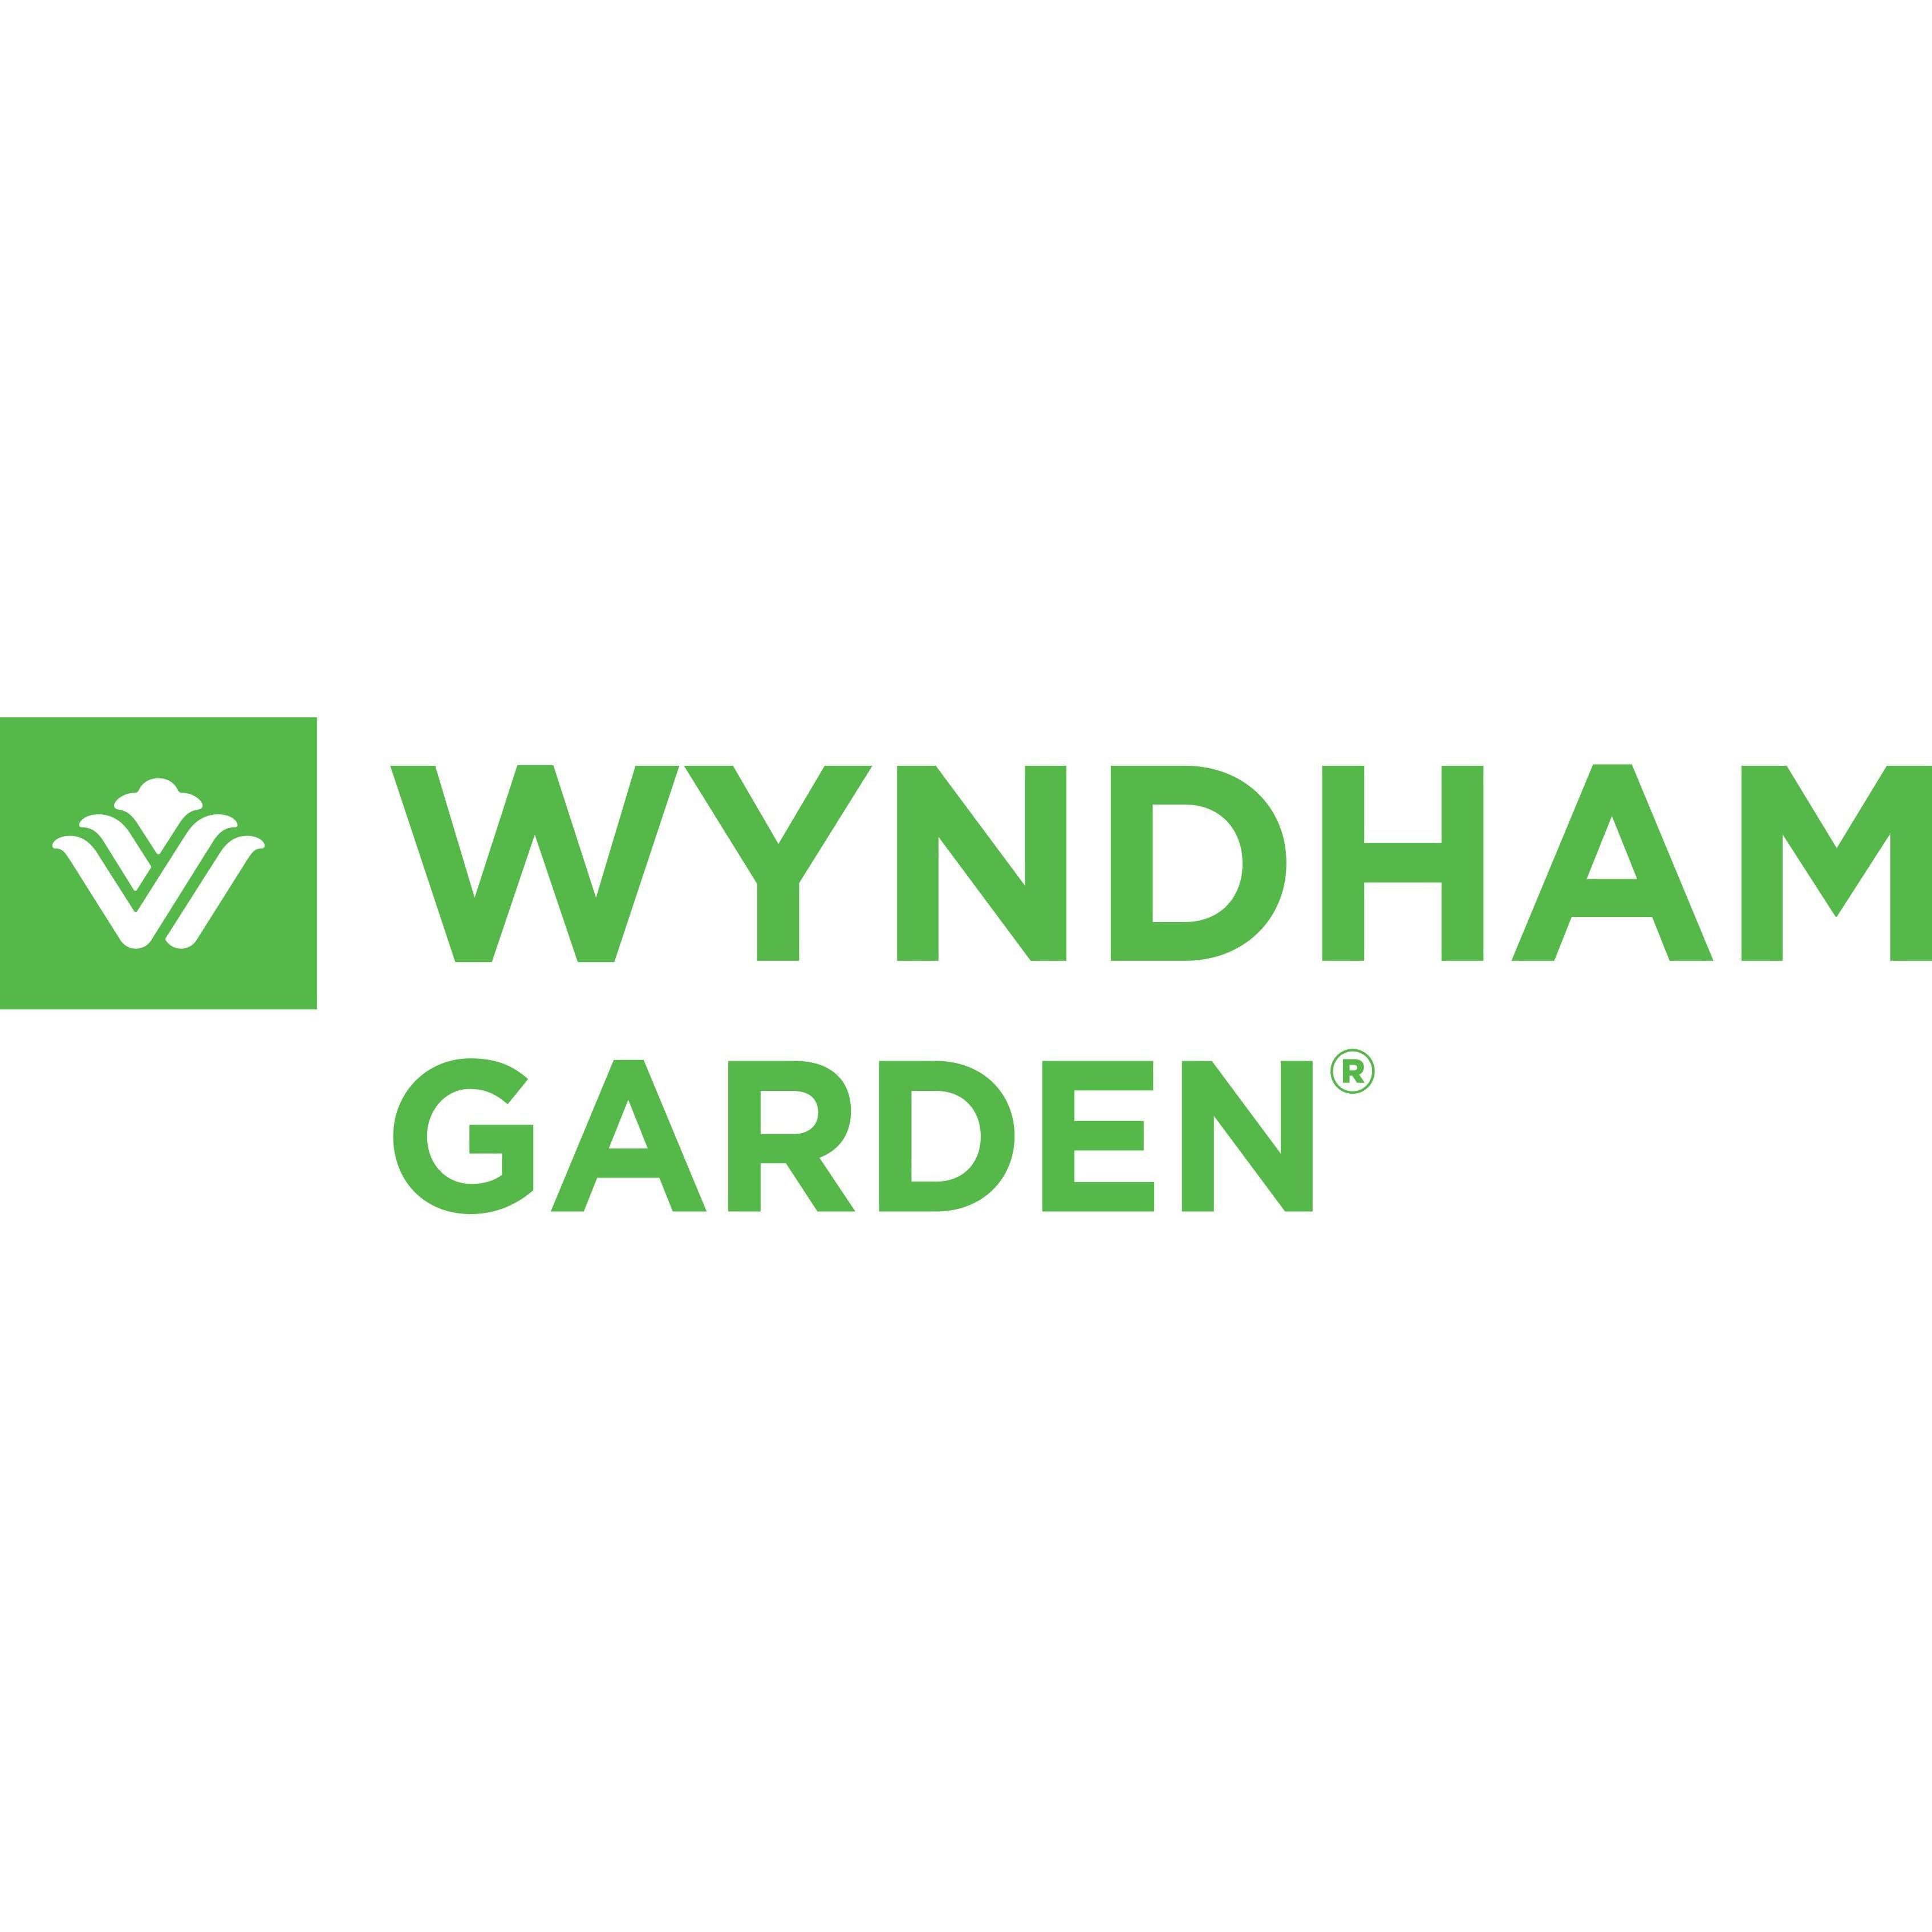 Wyndham Garden Hotels logo